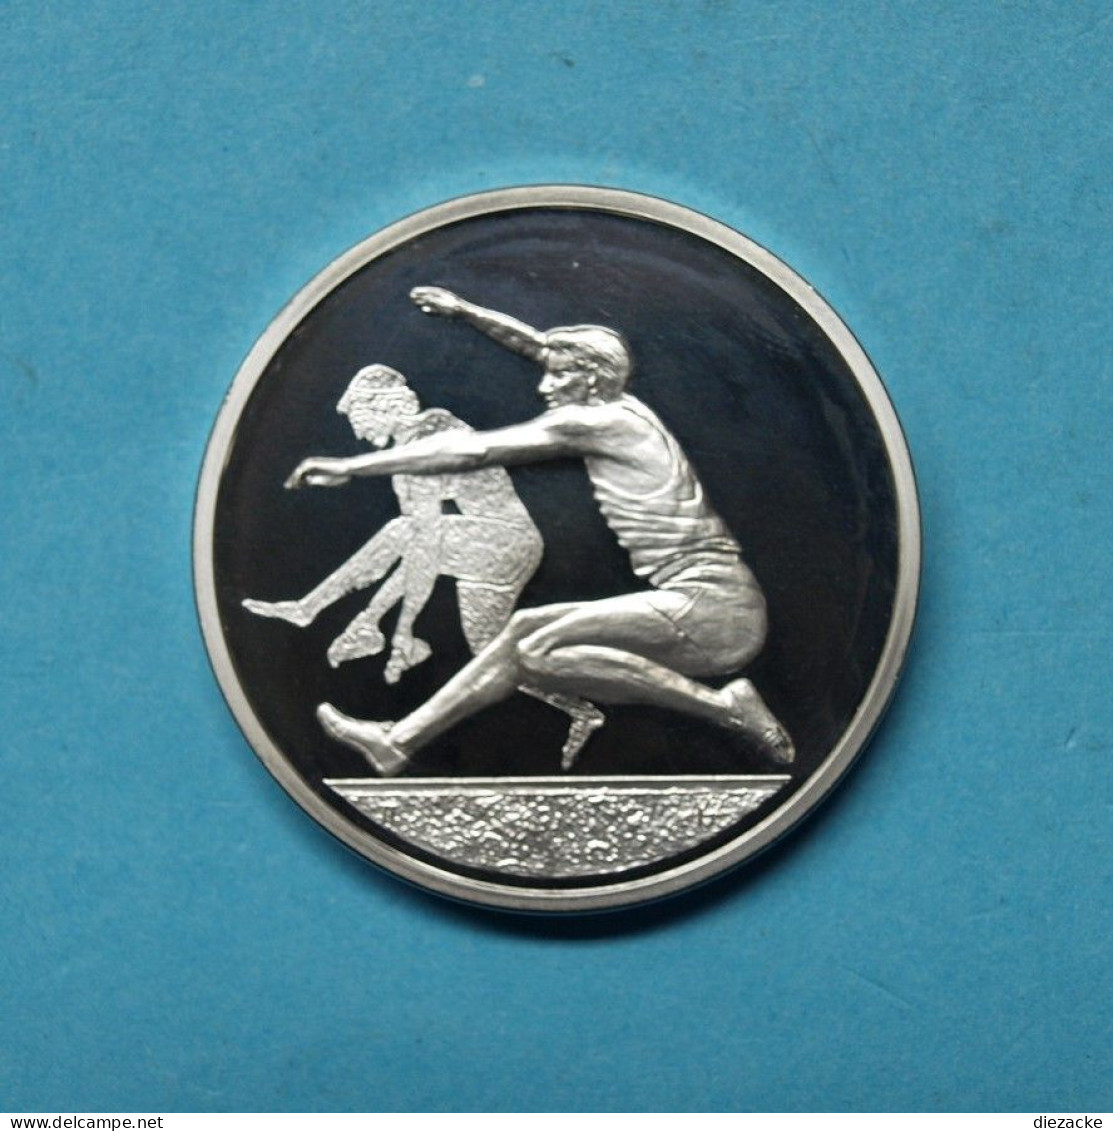 Griechenland 2004 10 Euro Olympiade Athen Weitsprung Silber PP (M4202 - Grèce